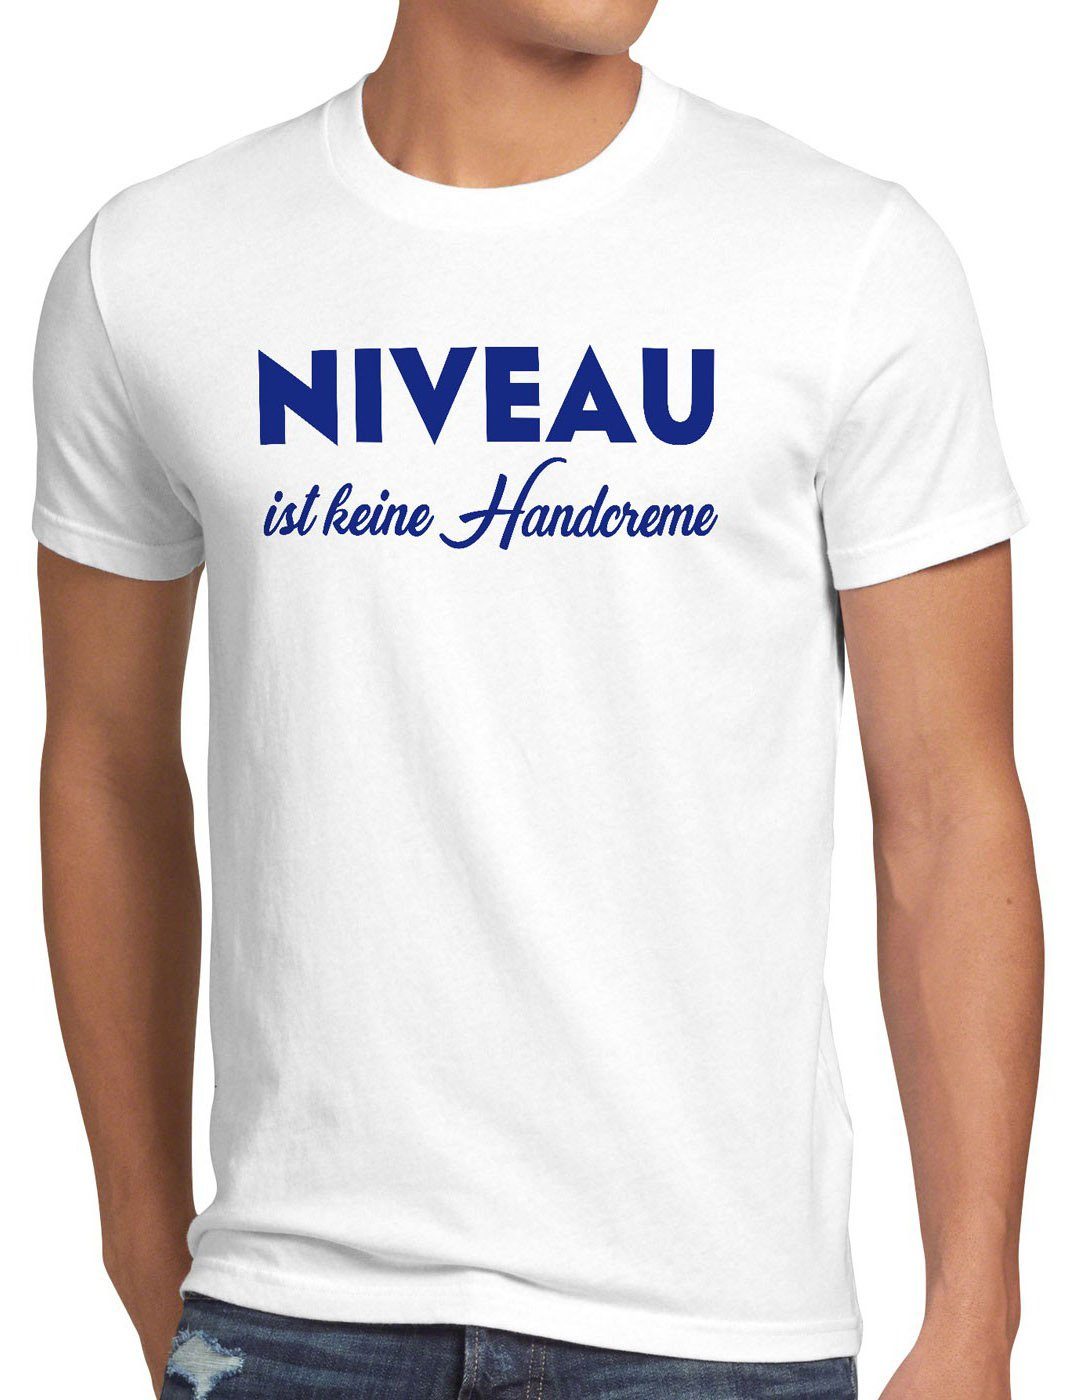 style3 Print-Shirt Herren T-Shirt Niveau ist keine Handcreme Creme Funshirt Spruch nivea fun lustig weiß